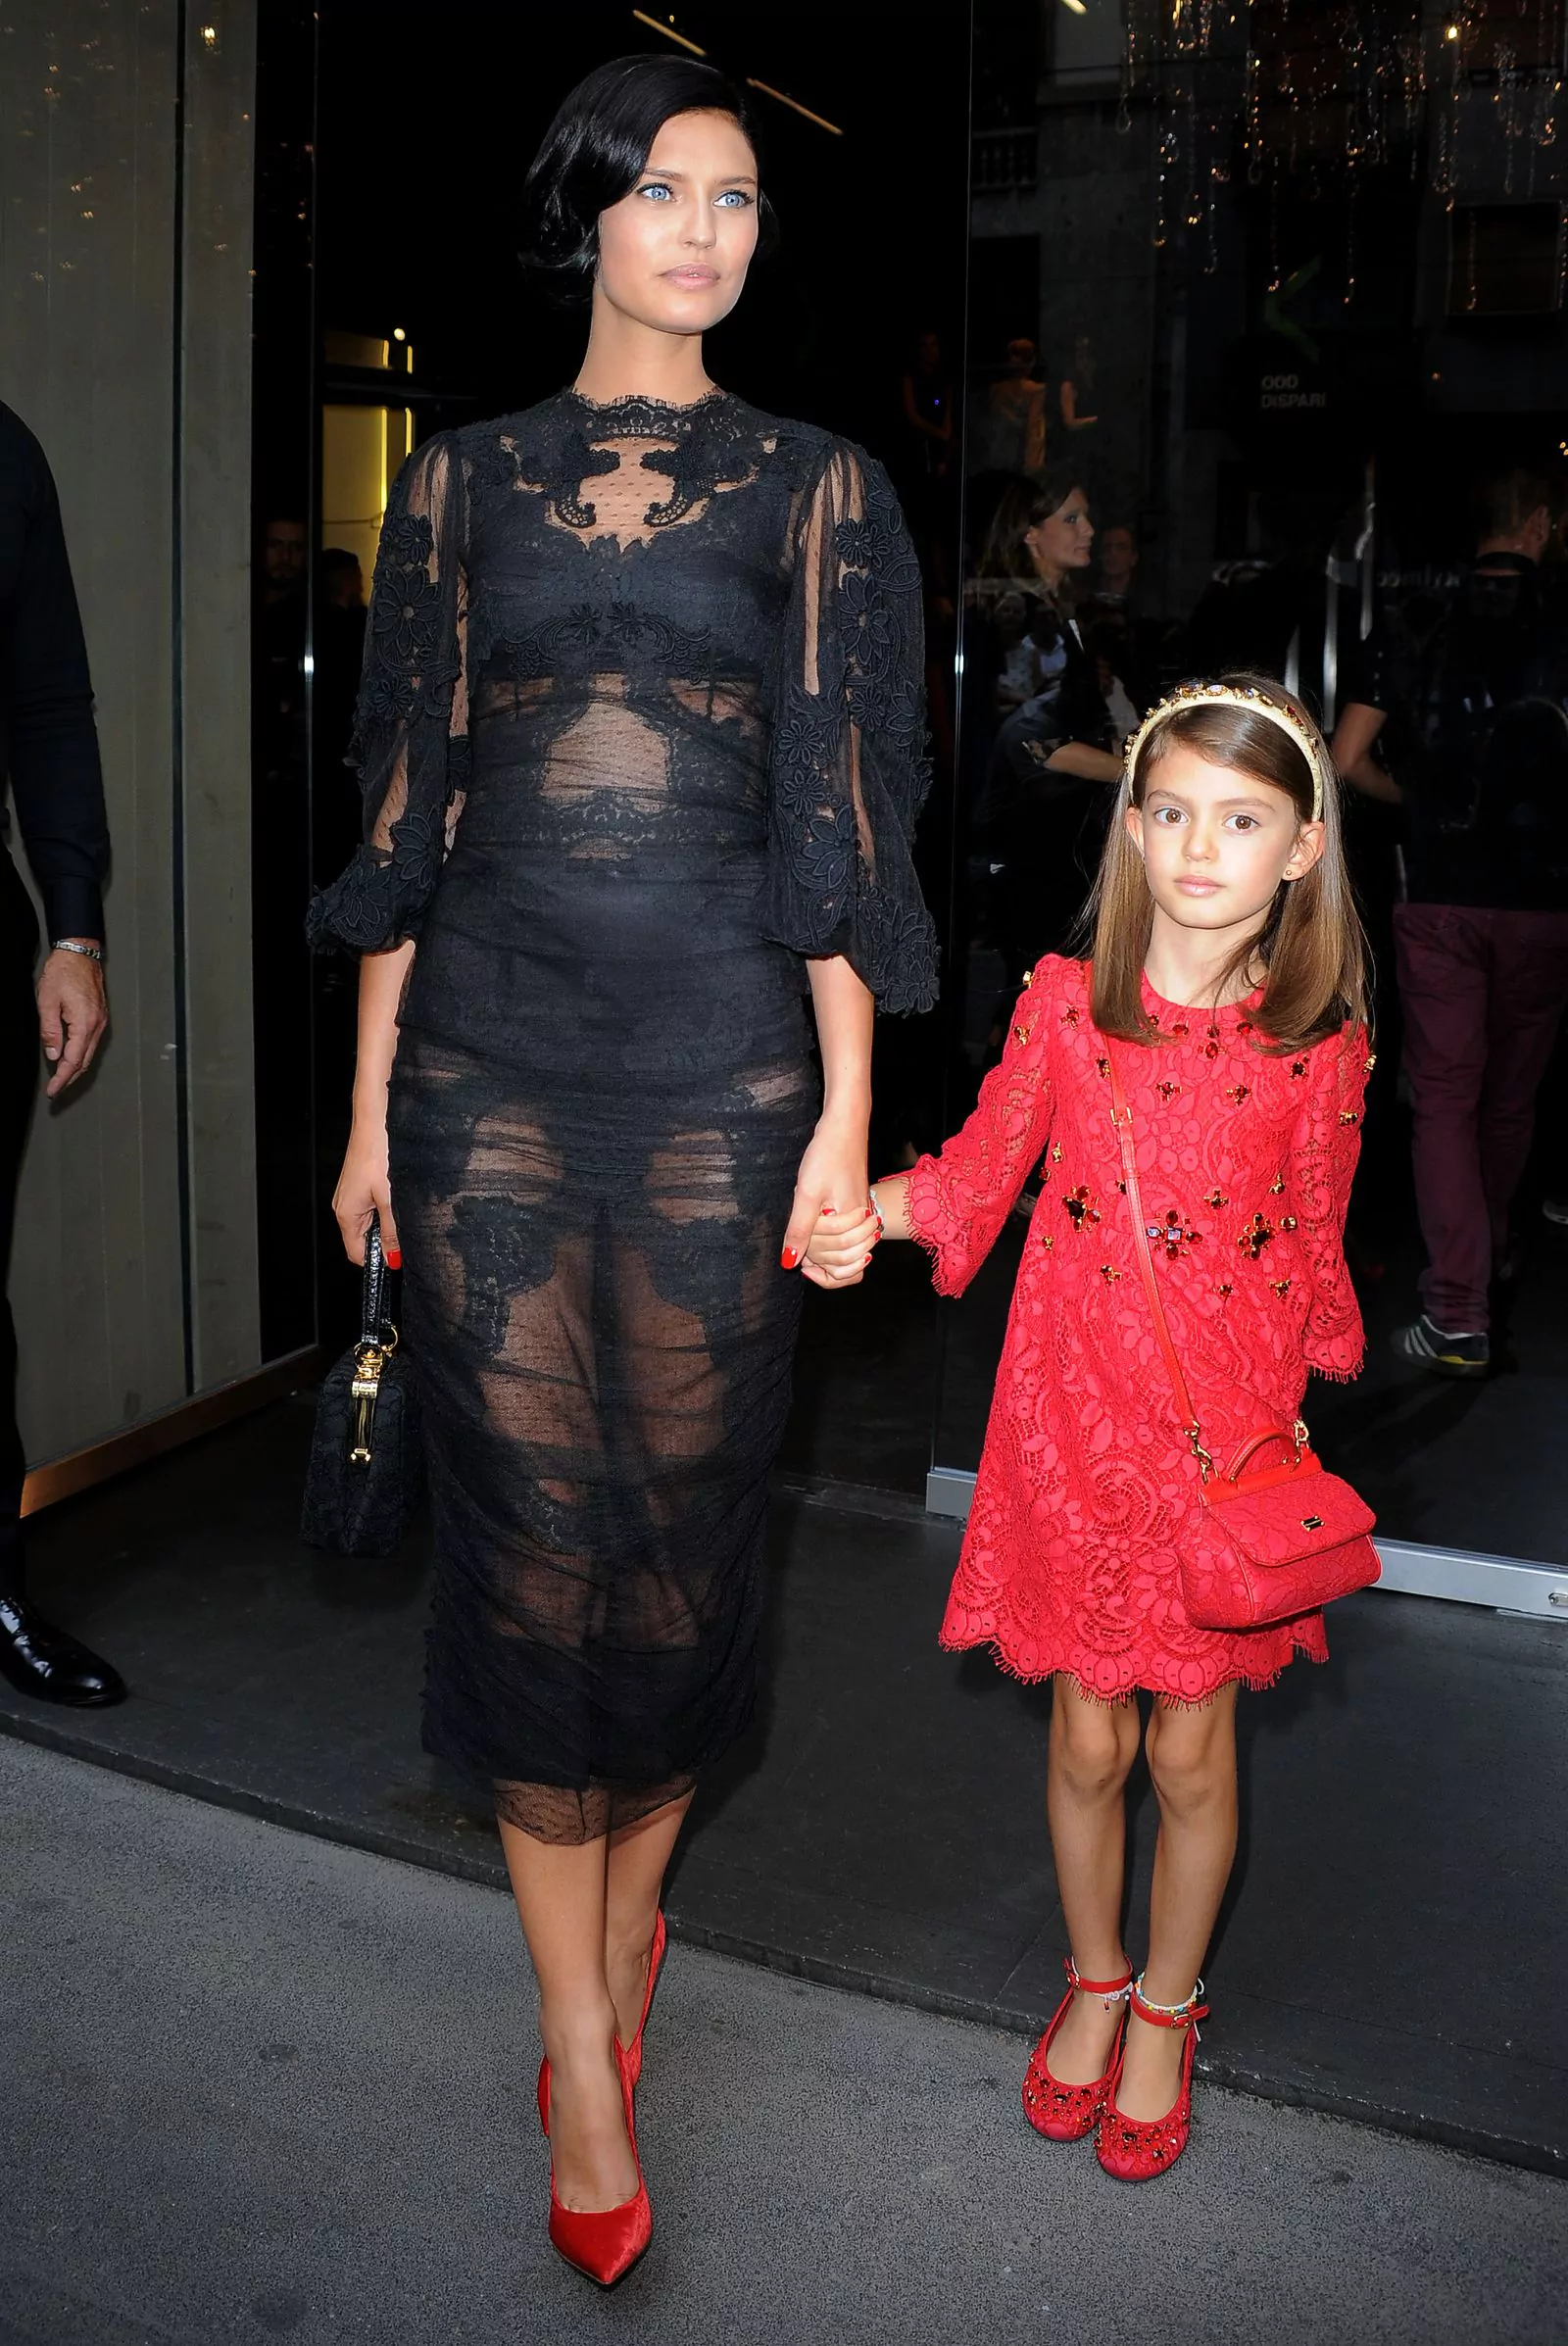 Бьянка Балти с дочерью Матильдой на шоу Dolce & Gabbana в рамках Недели моды в Милане весна-лето 2014, 22 сентября 2013 г.